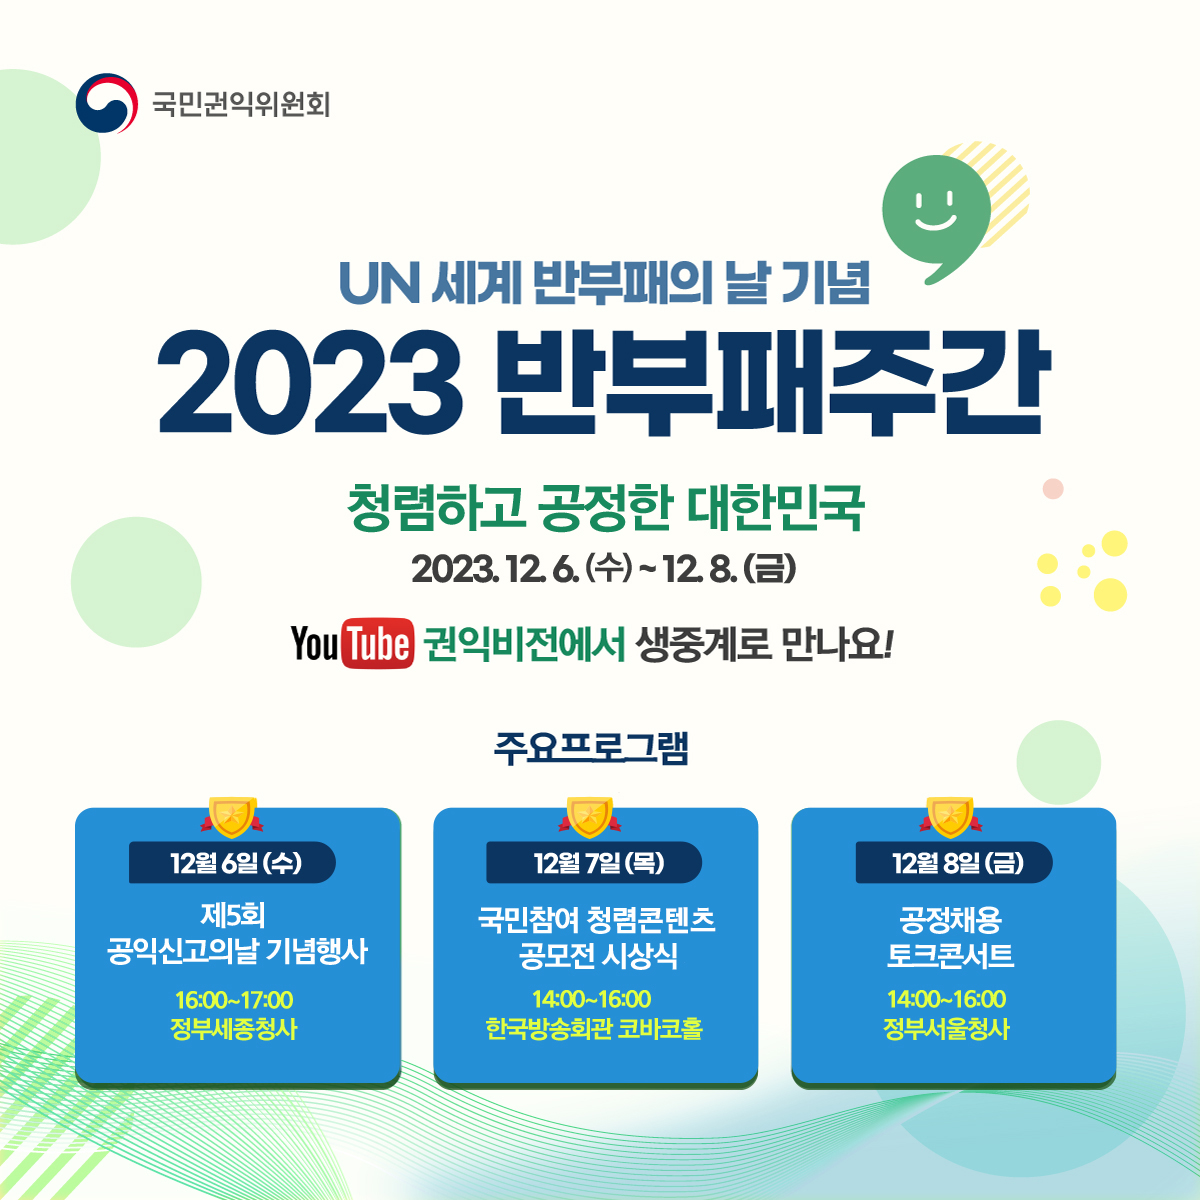 「2023년도 반부패주간 행사」 개최 안내